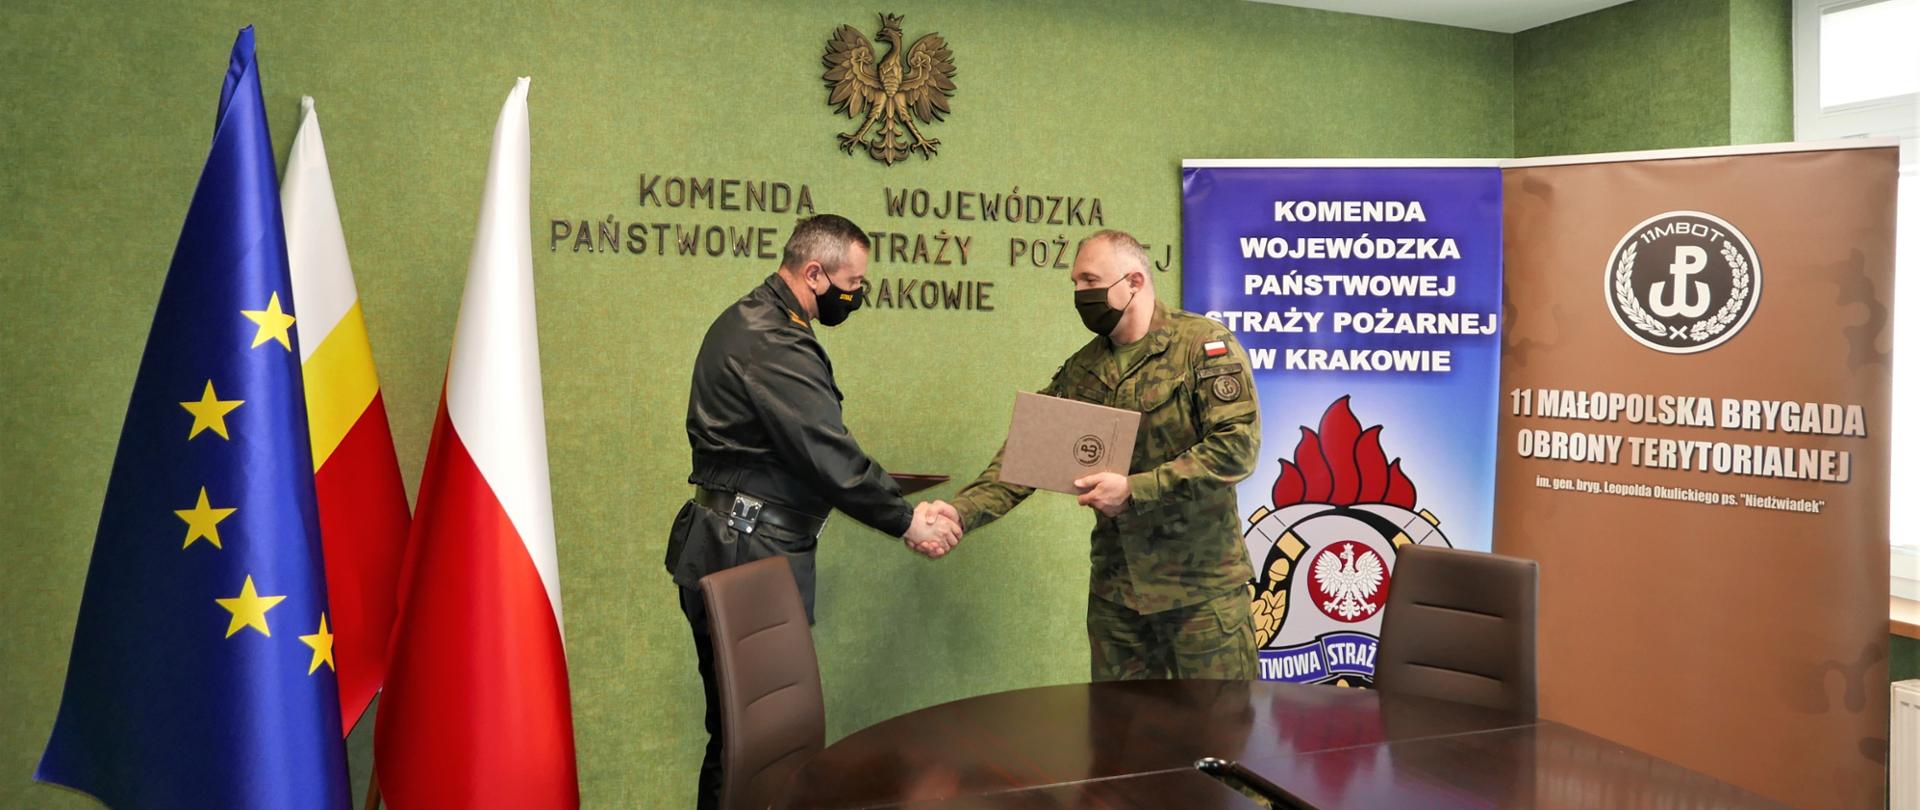 Podpisanie porozumienia pomiędzy 11 Małopolską Brygadą Obrony Terytorialnej oraz Komendą Wojewódzką PSP w Krakowie w sali konferencyjnej budynku KW PSP w Krakowie. 